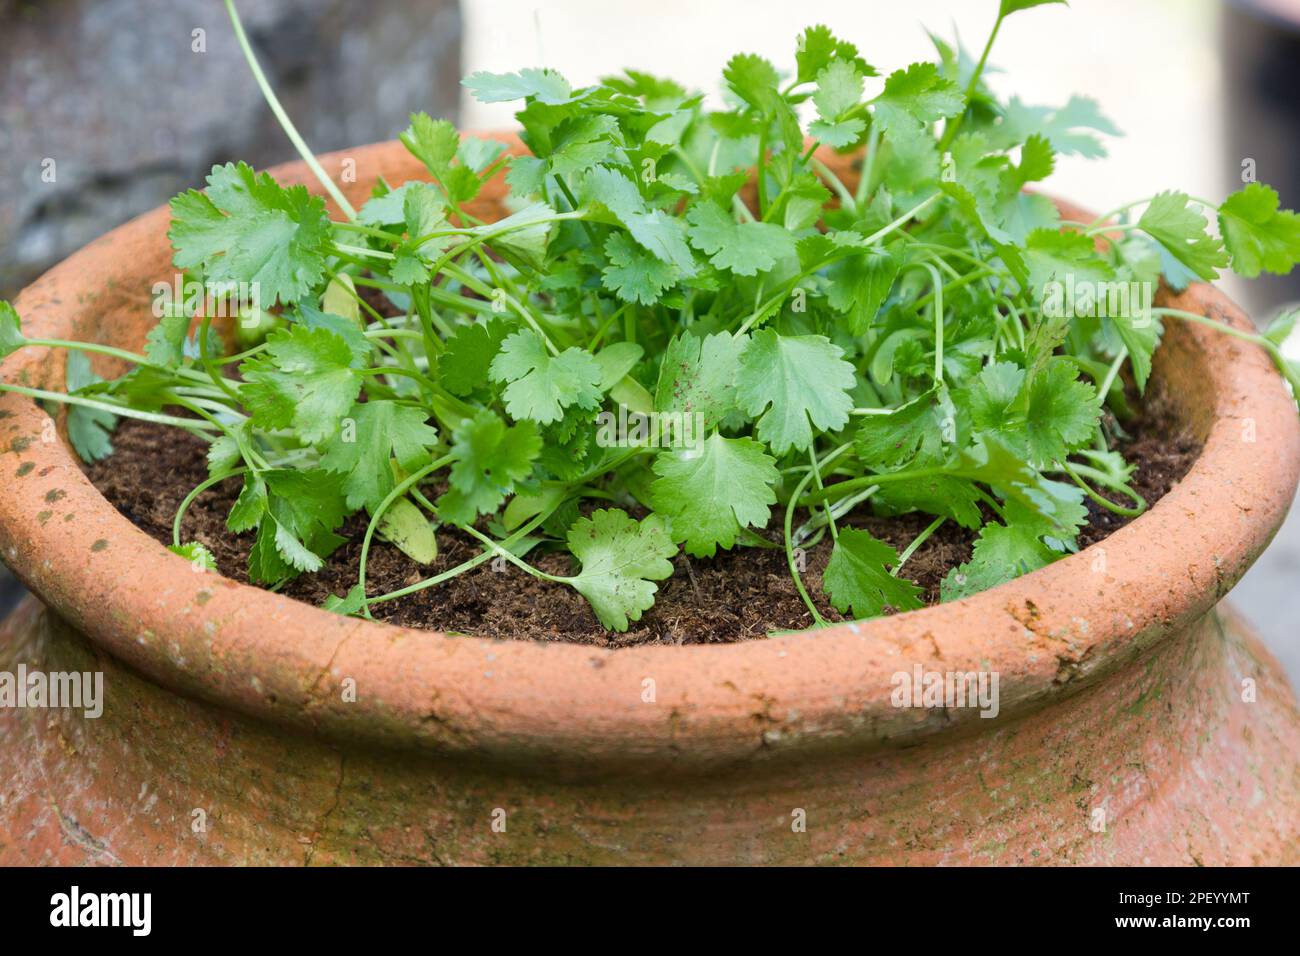 Coriandre poussant dans un pot en terre cuite Banque D'Images